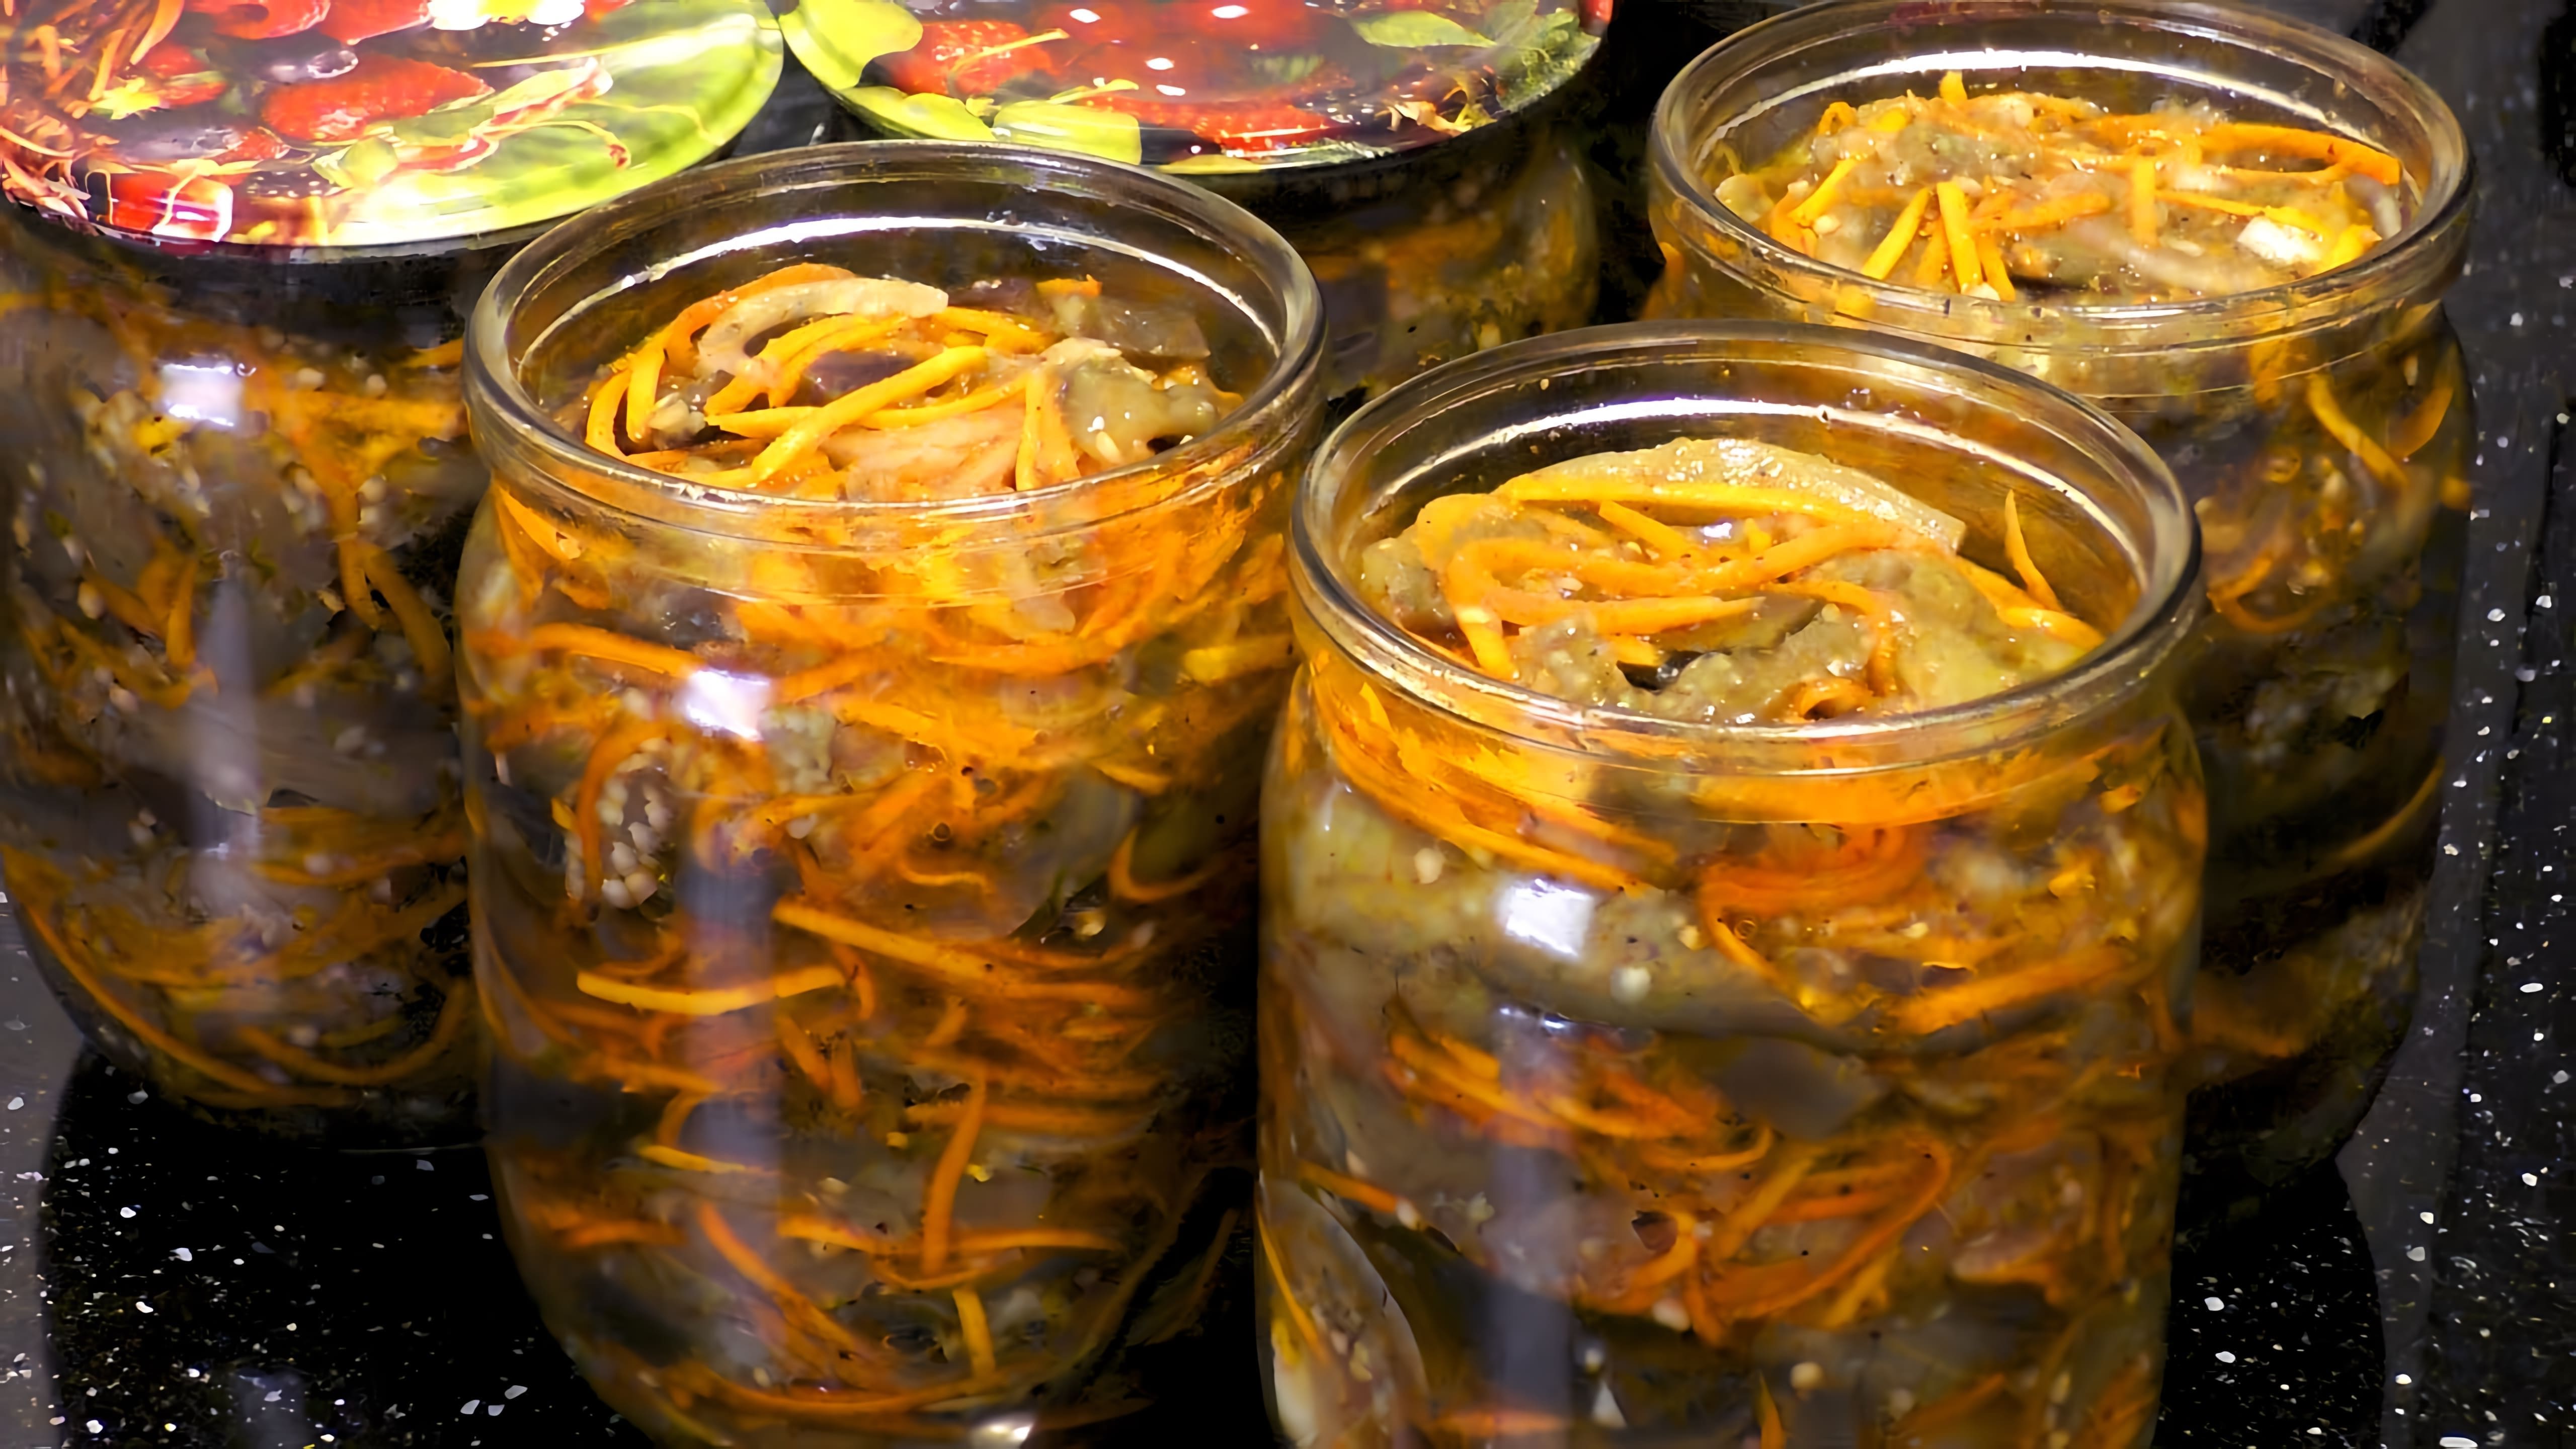 Видео рецепт приготовления корейского салата из баклажанов и моркови, который можно сохранить на зиму